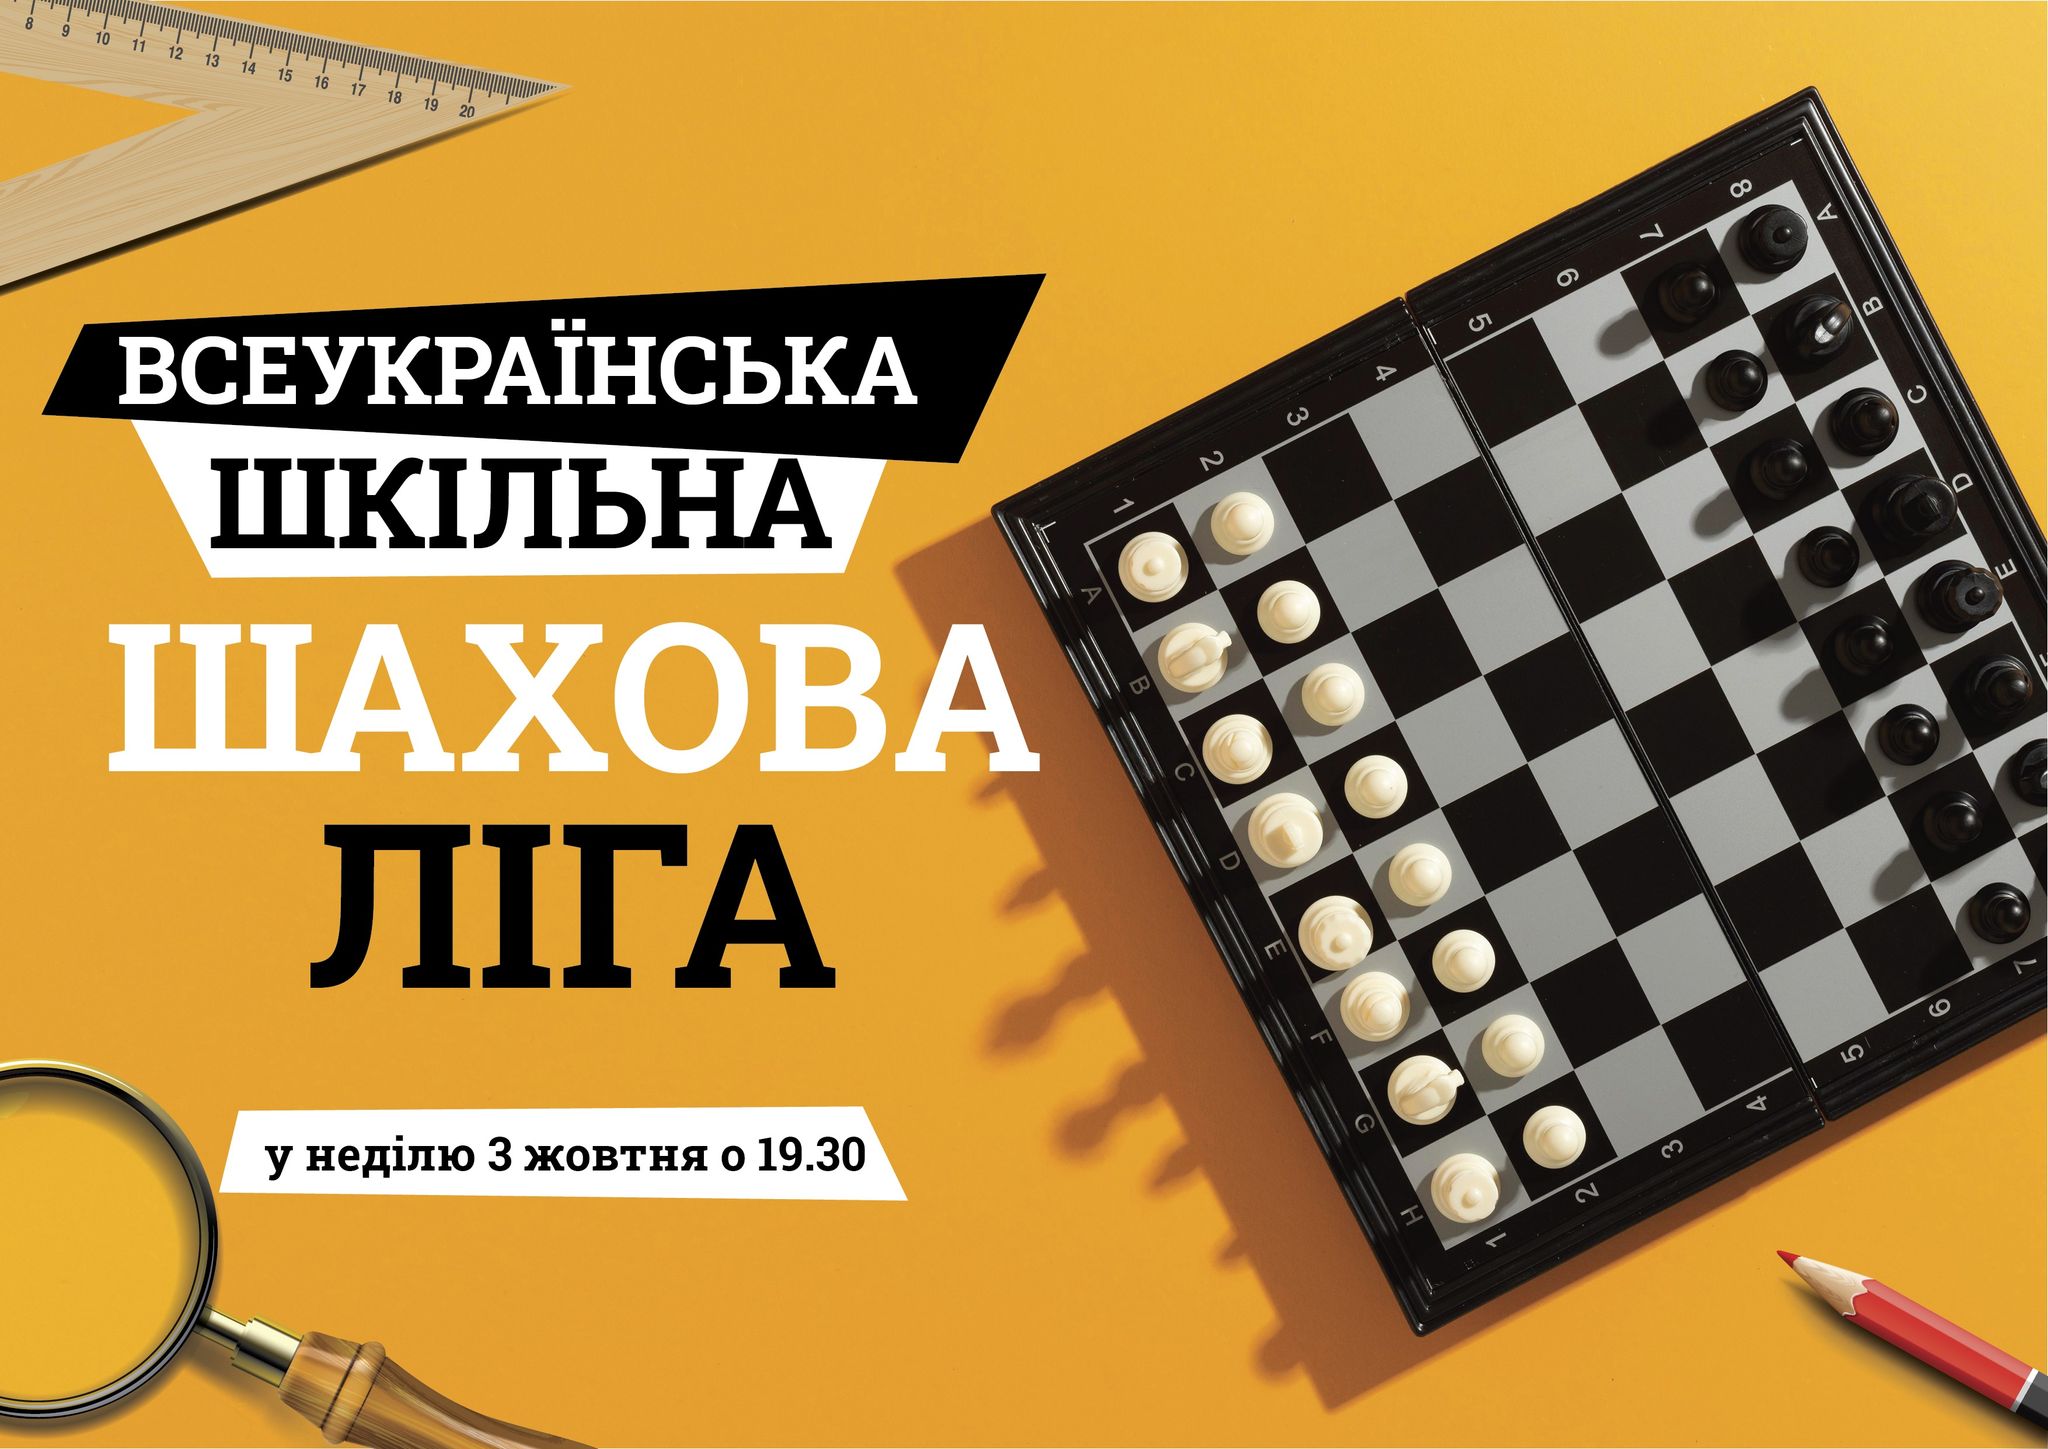 Первые соревнования второго шахматного года 2021/22 «Всеукраїнська шкільна шахова ліга» (сезон октябрь-декабрь 2021 г.)